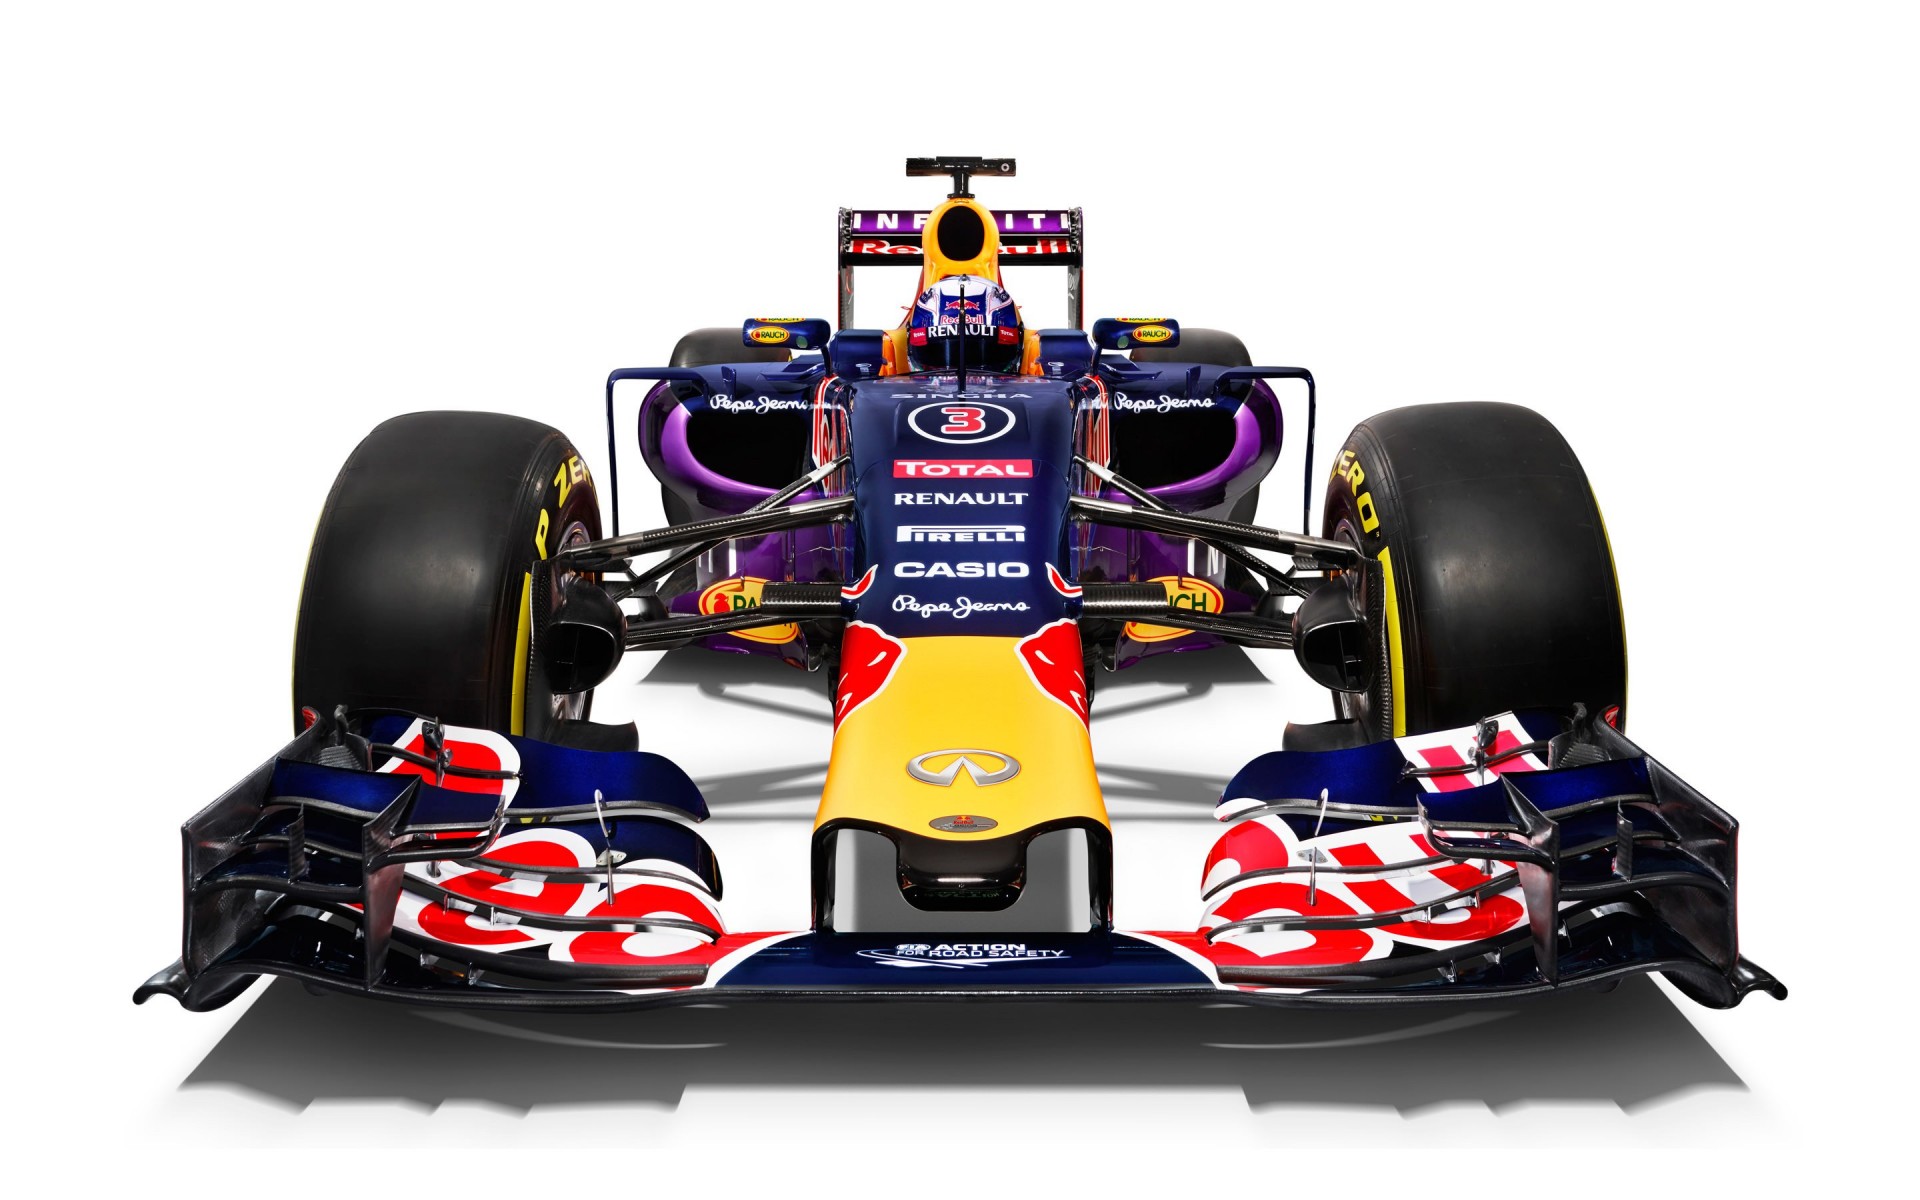 Infiniti Red Bull Racing RB11 2015 Formula 1 Car Wallpaper for Desktop 1920x1200